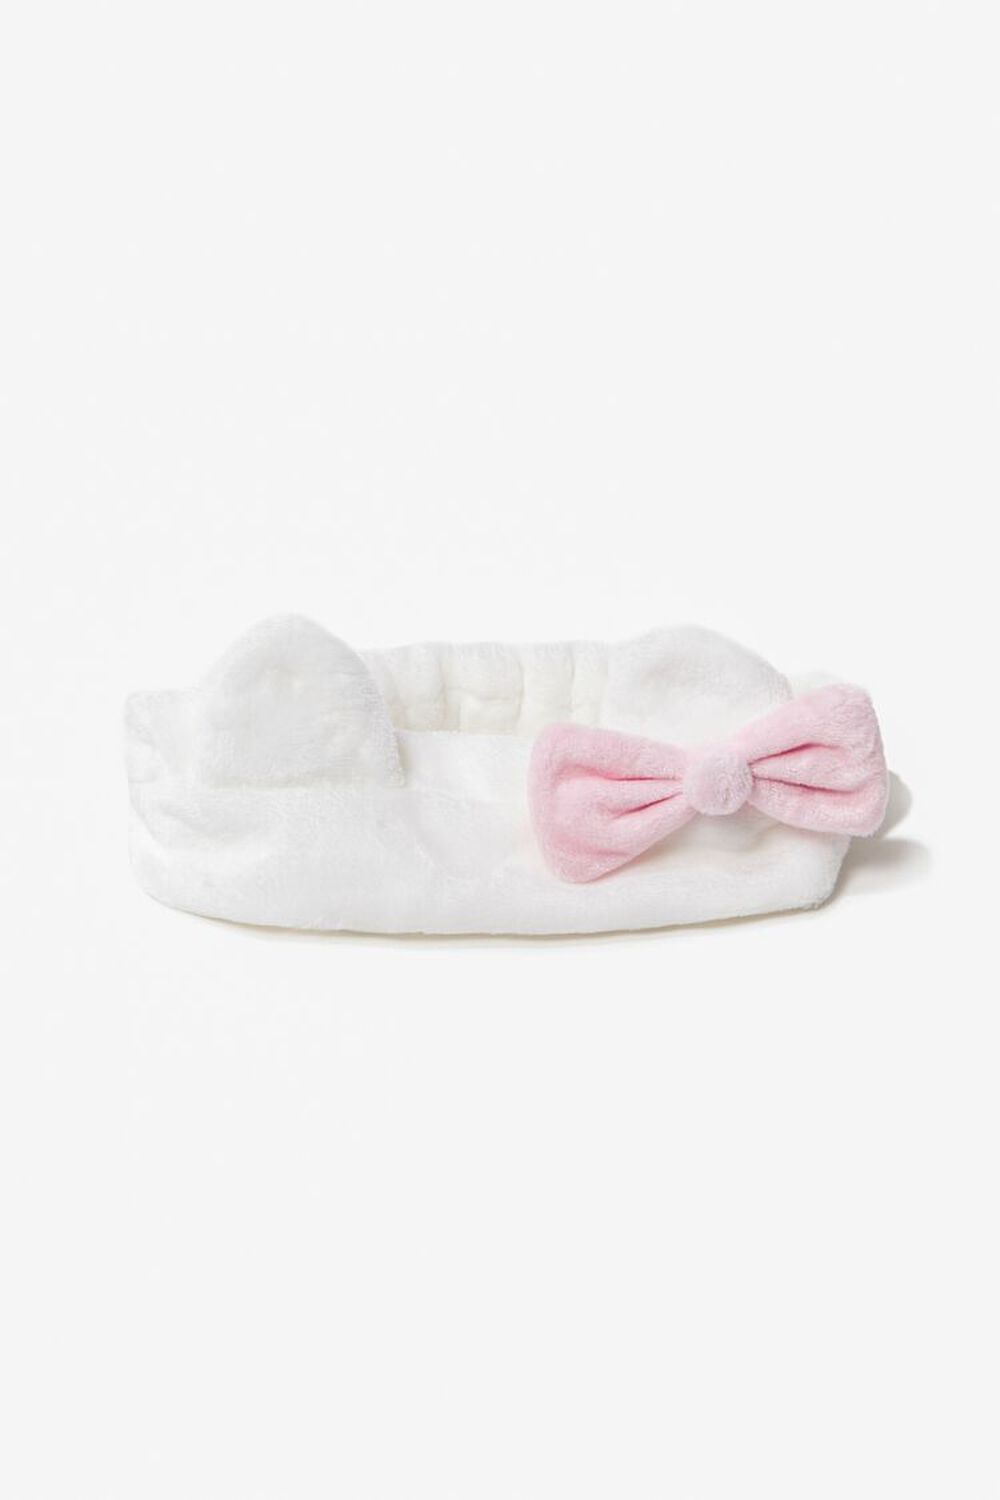 WHITE/PINK Plush Hello Kitty Headwrap, image 1